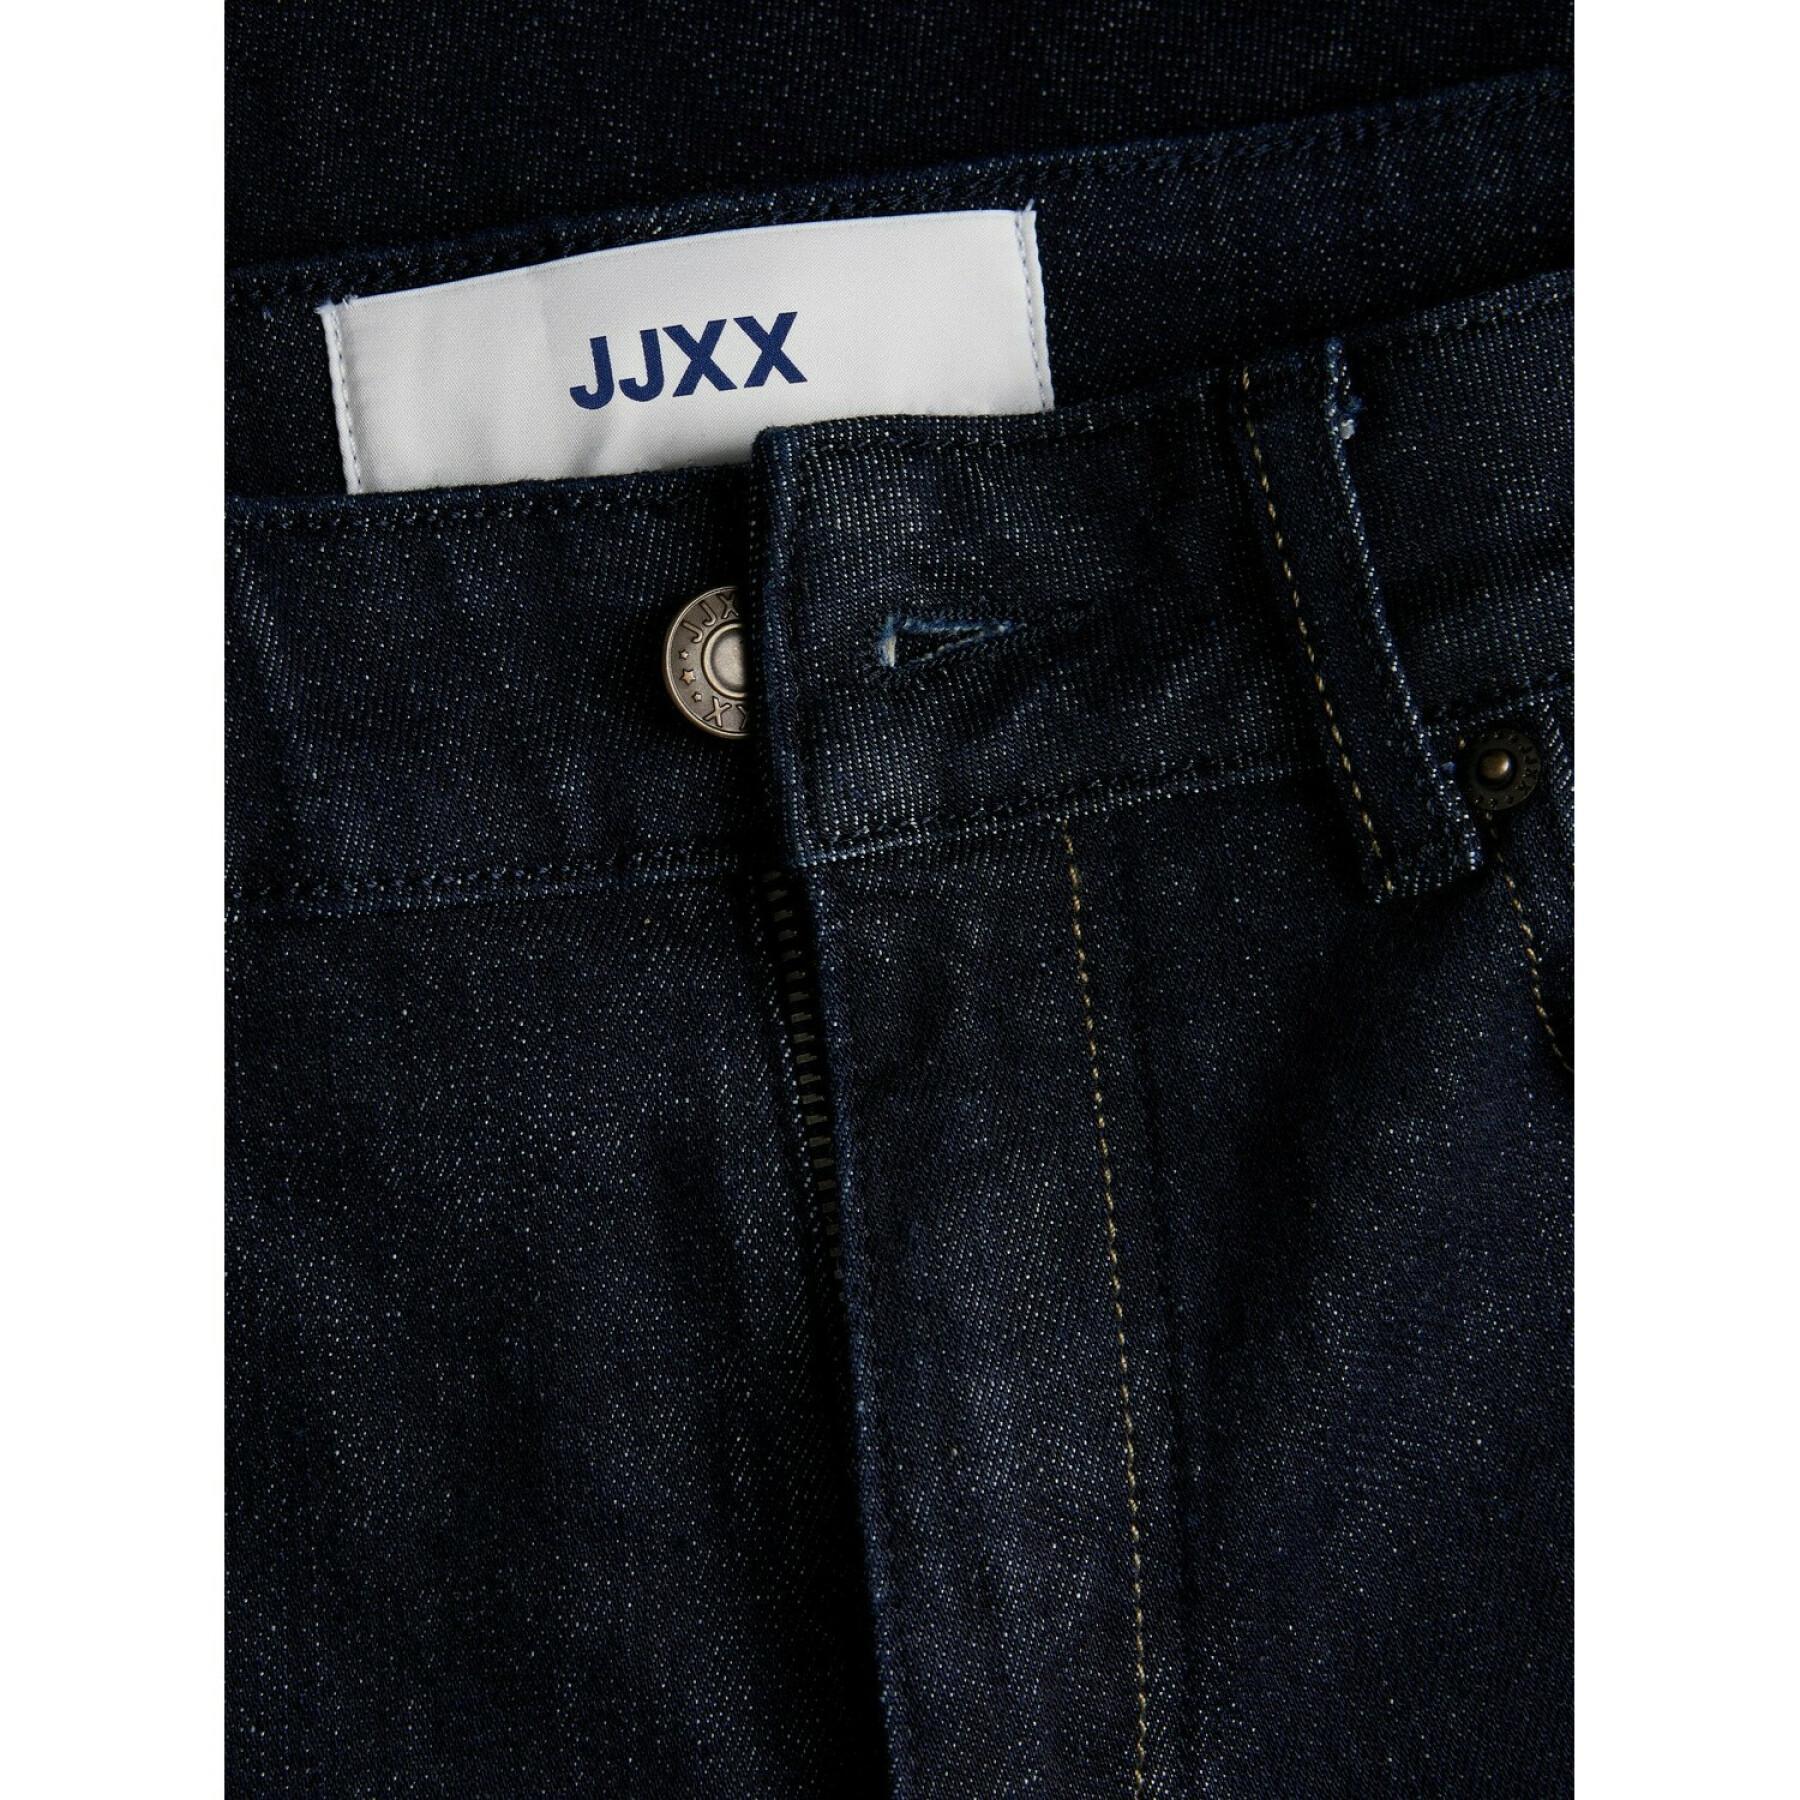 Dames skinny jeans JJXX berlin selvedge rc2002